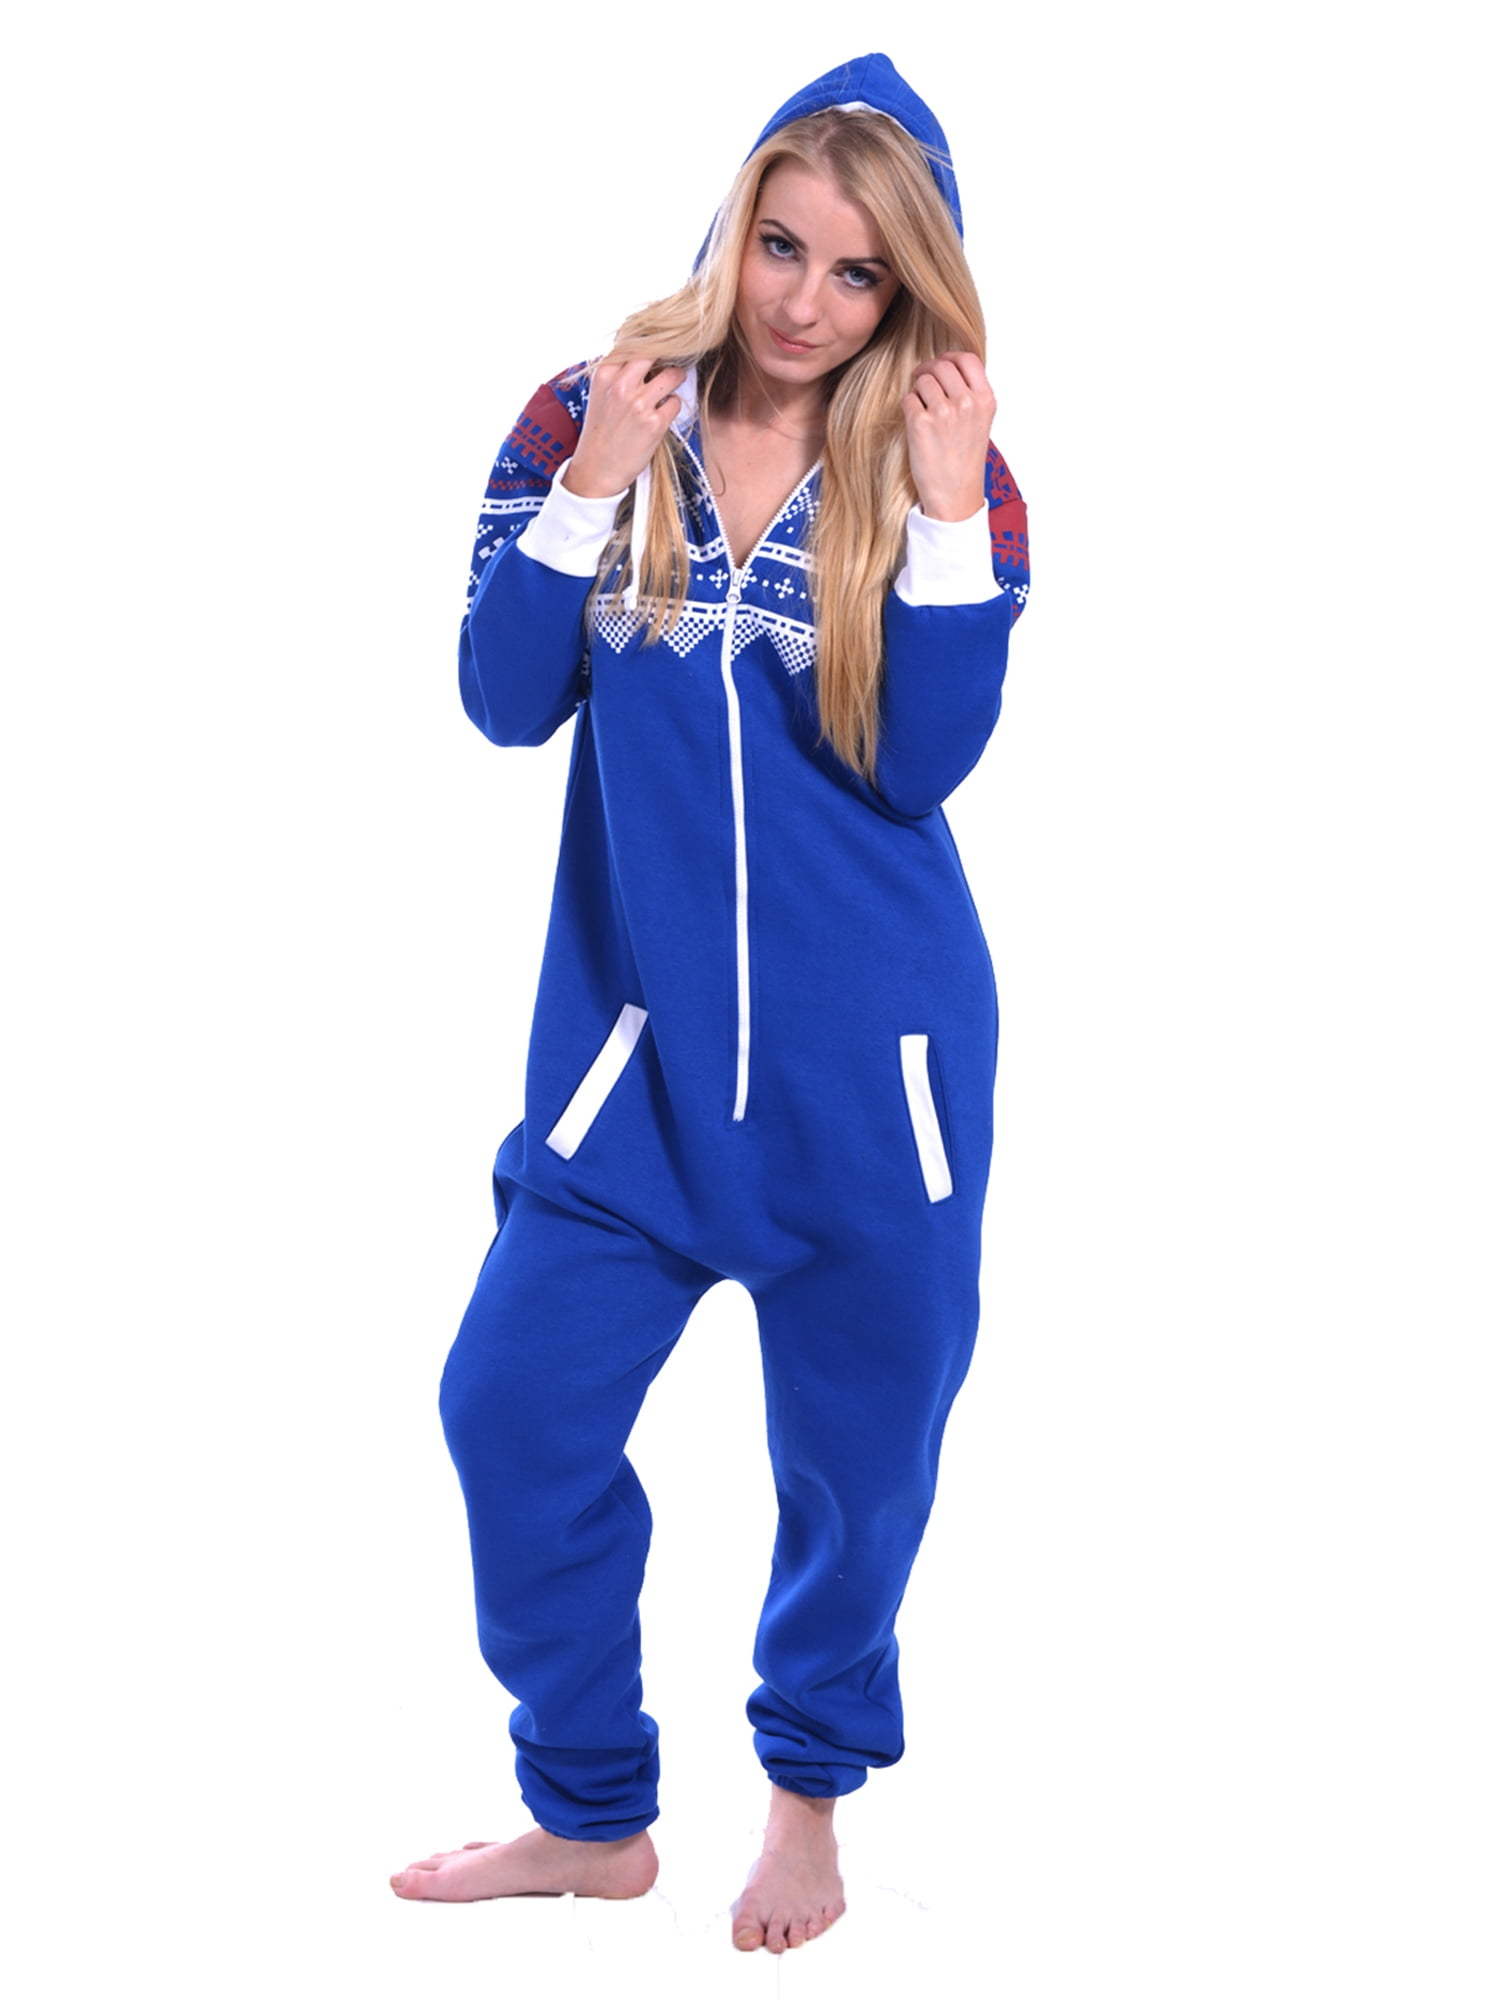 Adult Union Suit pajamas Sleepwear for Women One Piece Pajama Ladies ...